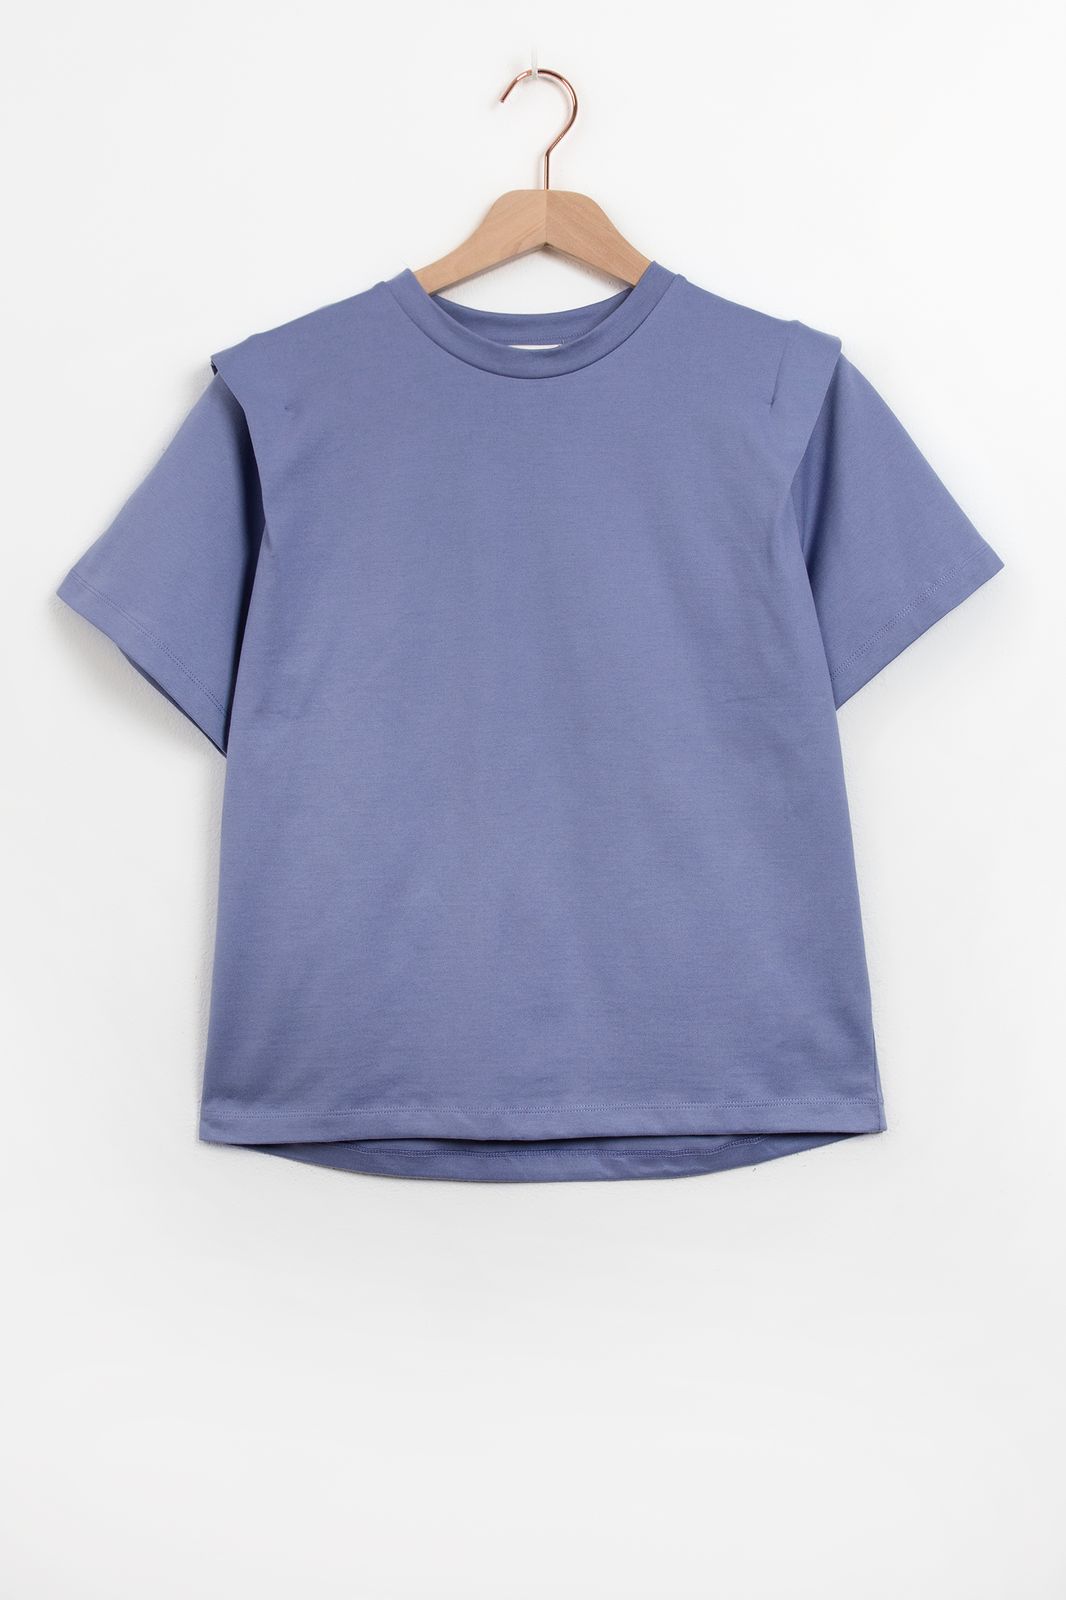 T-Shirt mit Schulter-Details - blau